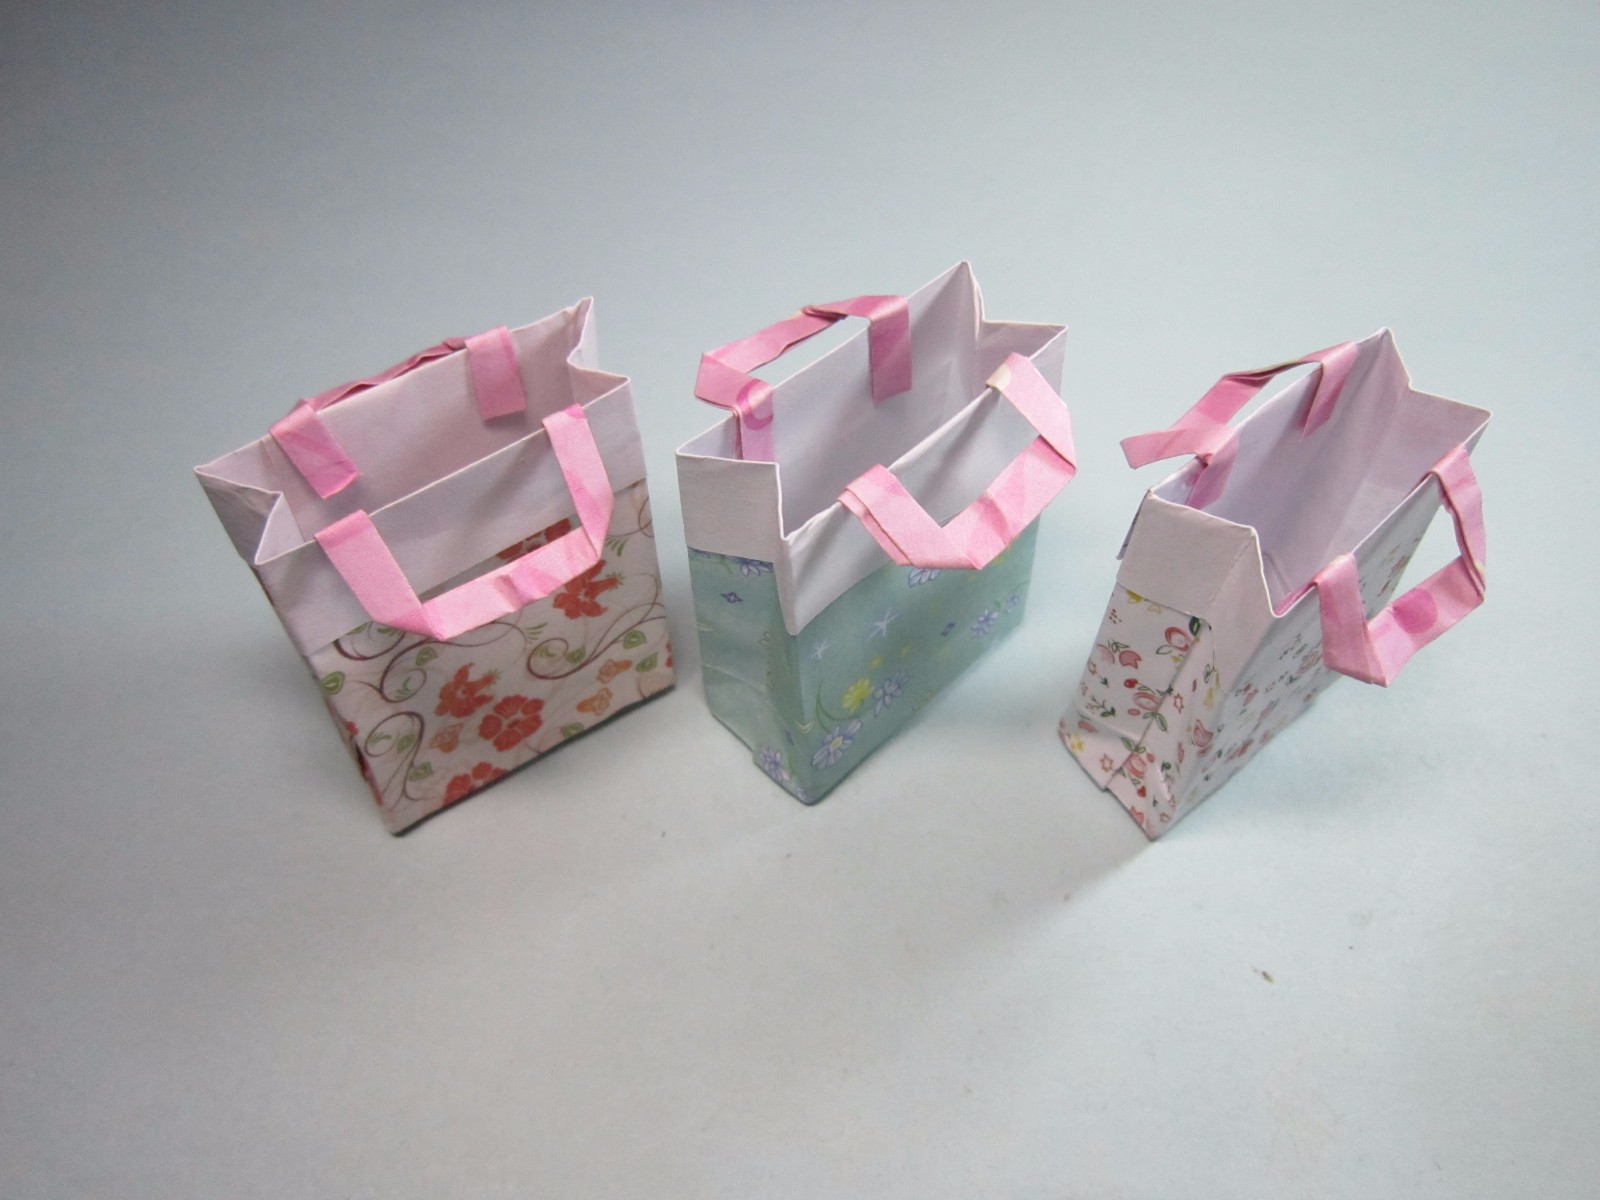 纸艺手工折纸礼品袋,简单又漂亮的礼品袋子折法教程,diy手工制作视频.